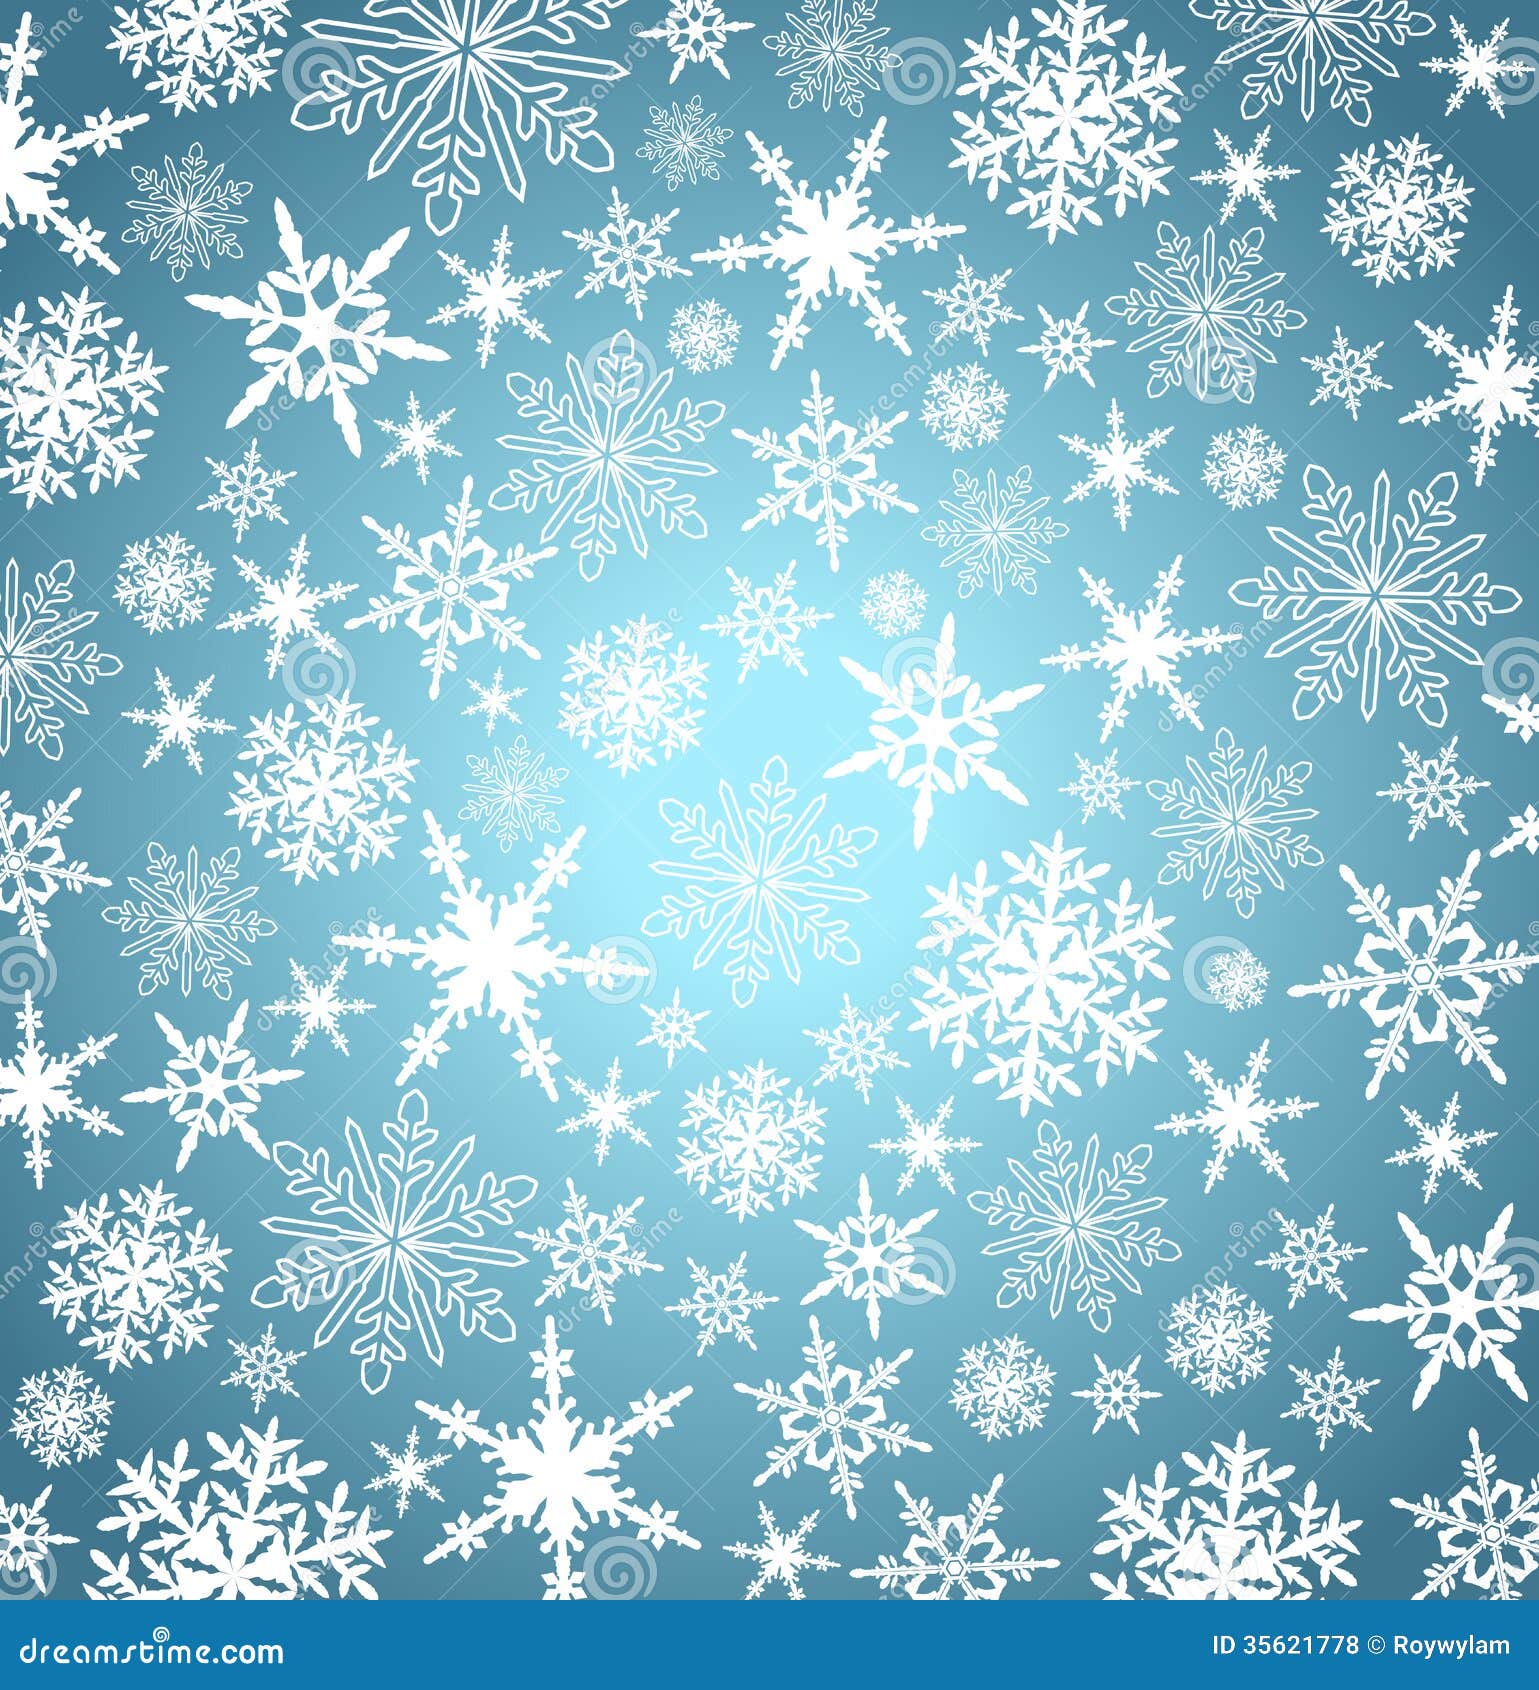 Goldweihnachtsschneeflocken-Hintergrund. Weihnachtsschneeflocken-fallender silberner blauer Hintergrund